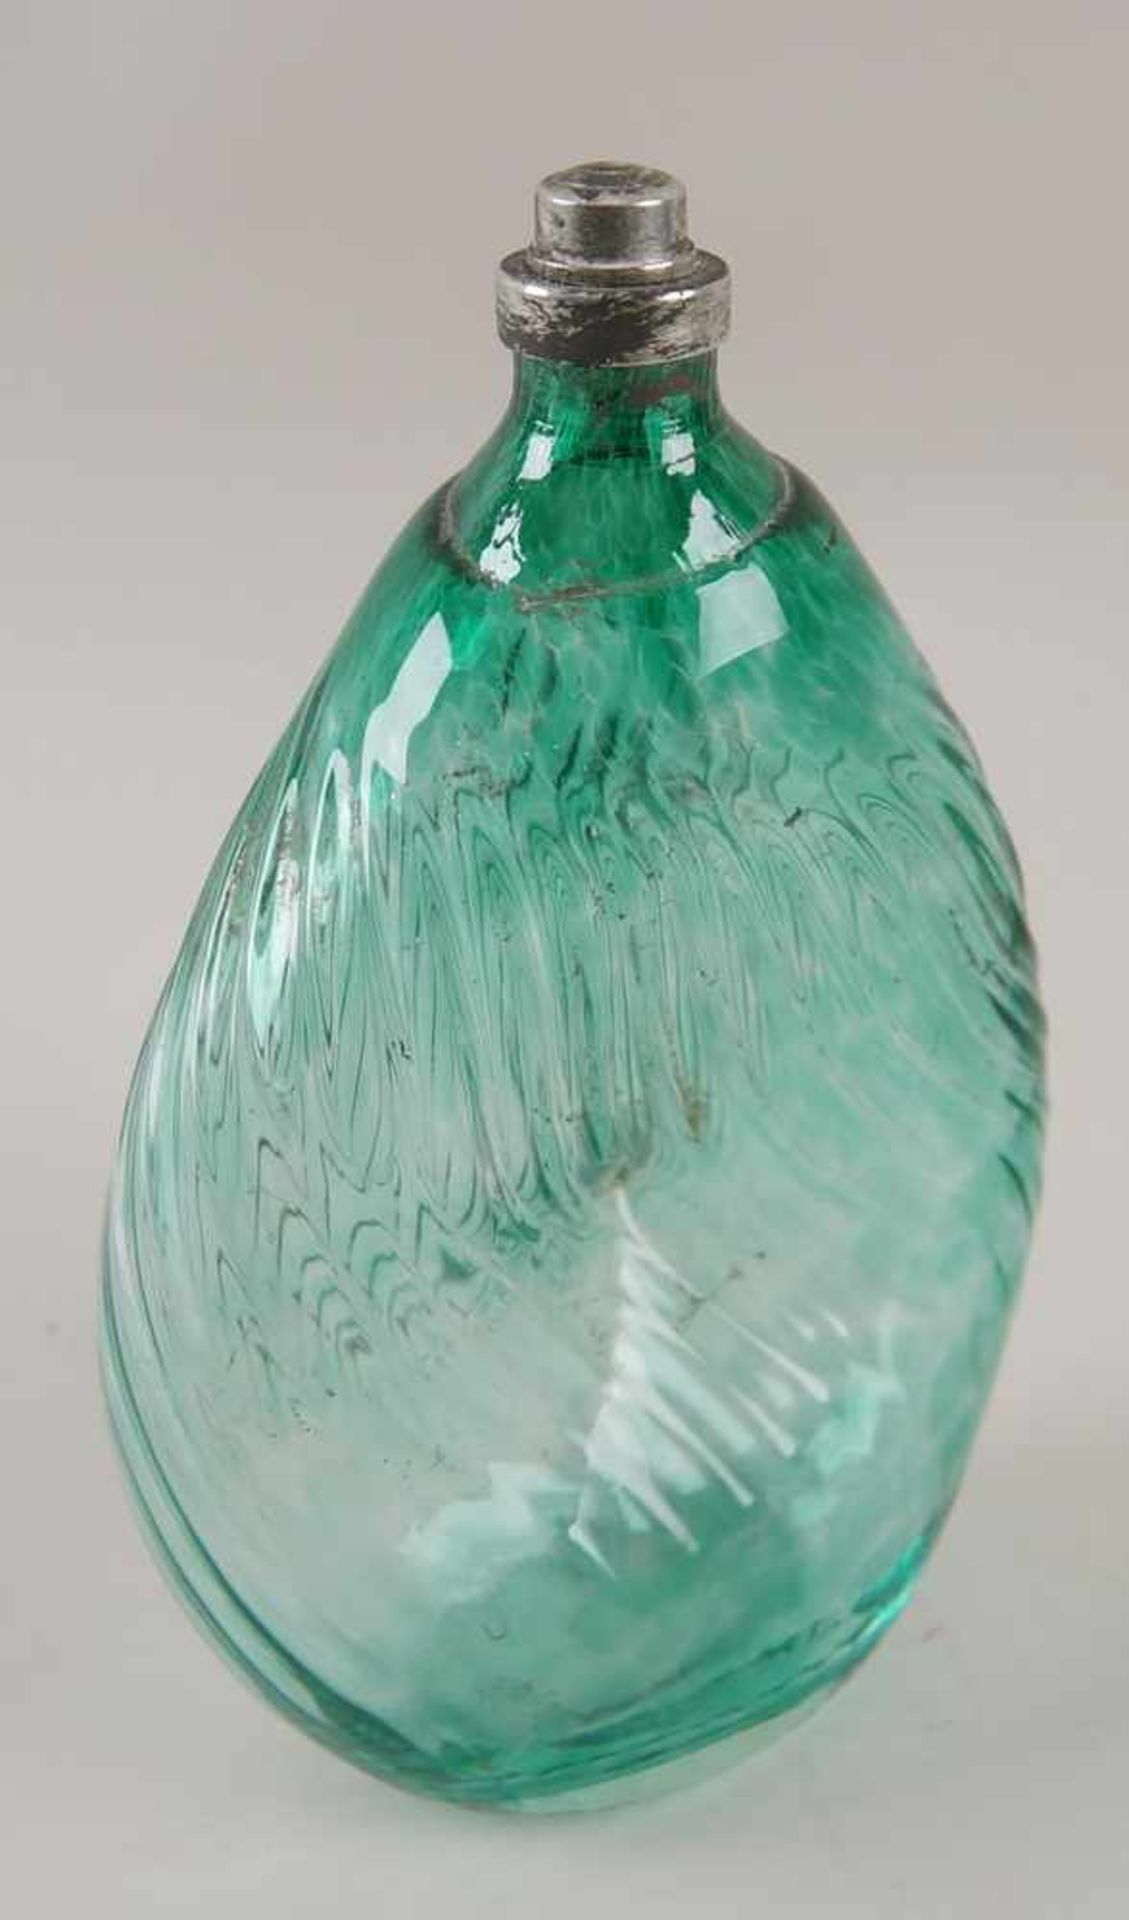 Gramsacher Nabelflasche, Tirol, ~ 1900, hellgrünes Glas, H 23,5cm - Bild 2 aus 6